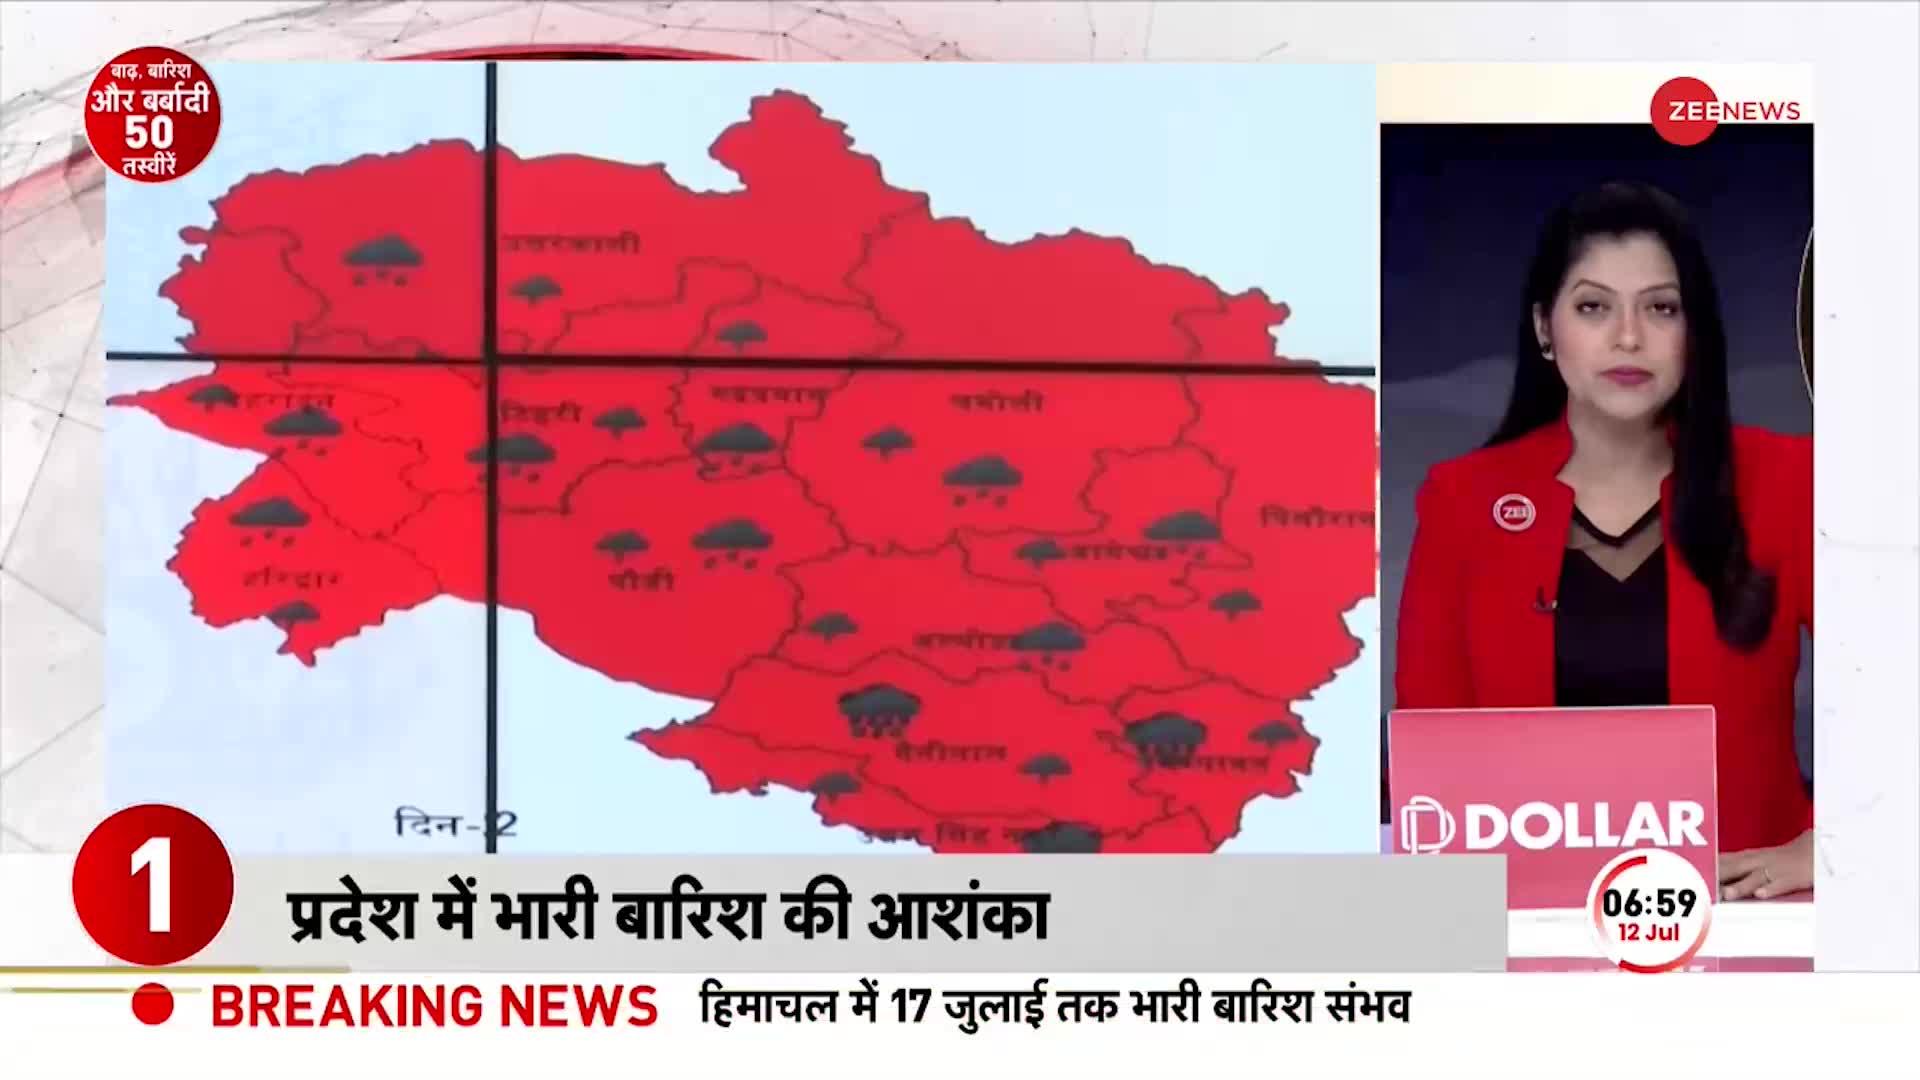 Uttarakhand Rain Alert: उत्तराखंड में भारी बारिश का रेड अलर्ट! लोगों से सावधानी बरतने की अपील